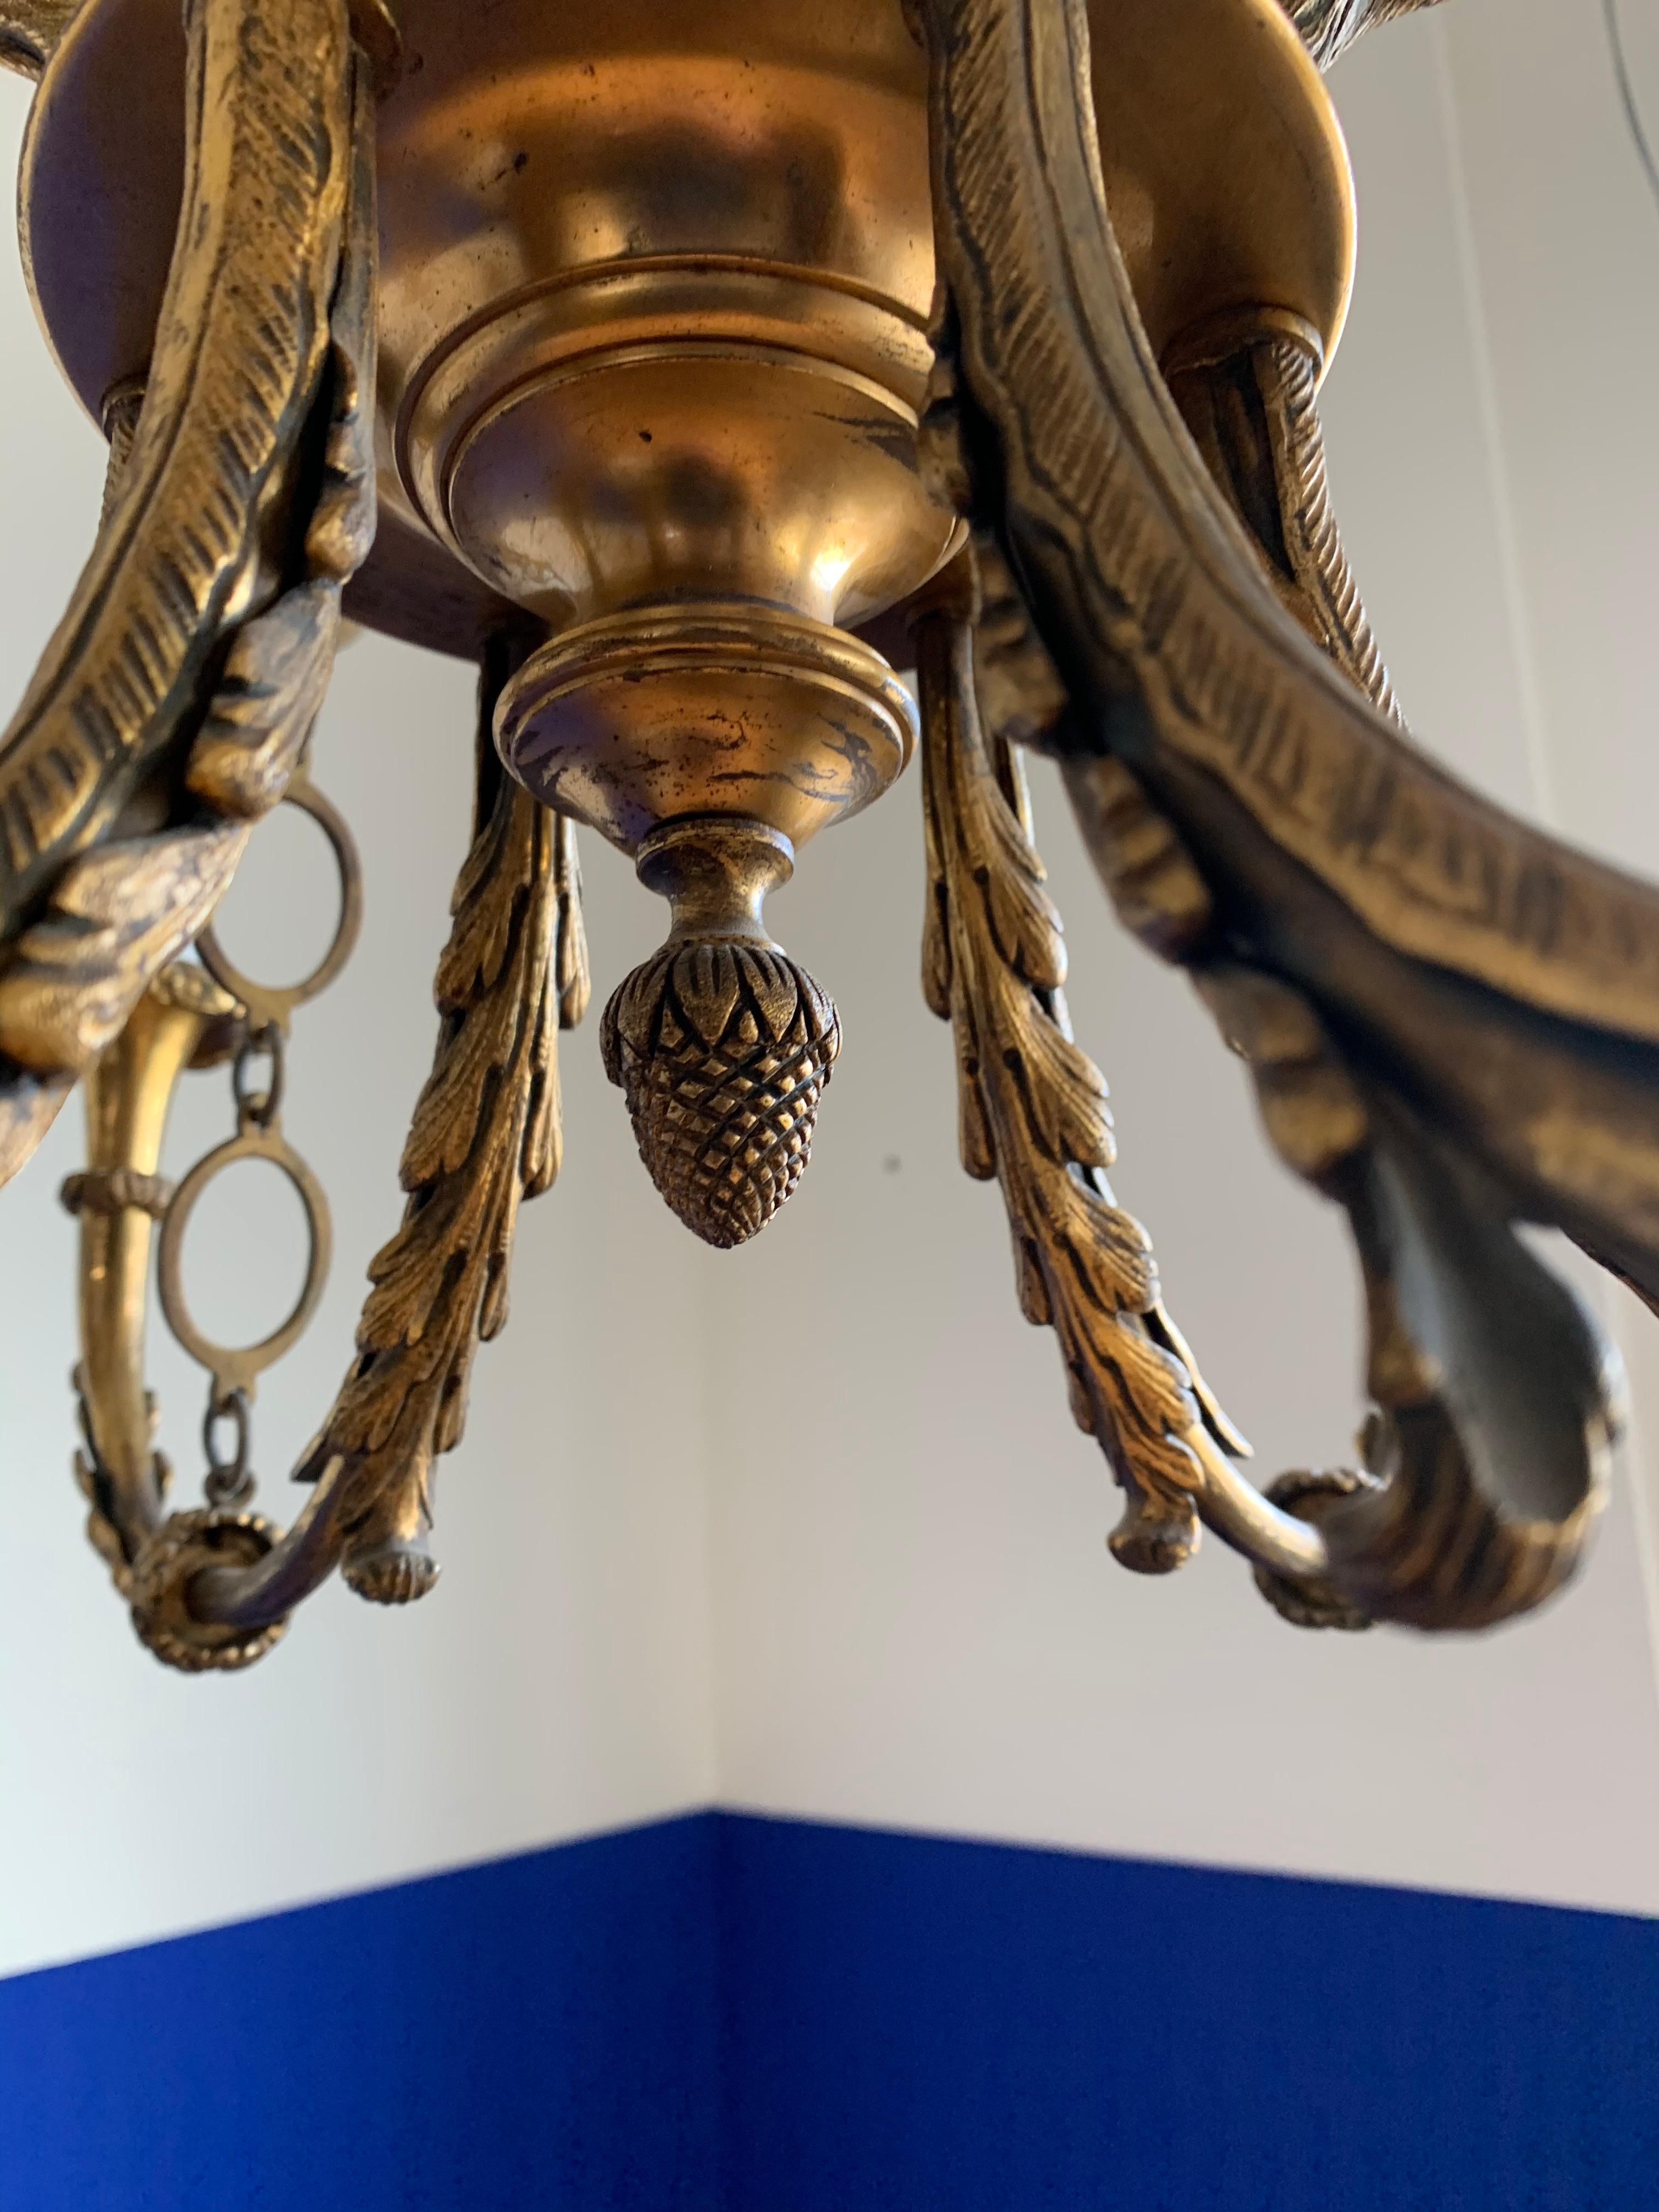 Antique & Striking Empire Revival Gilt Bronze Pendant Light w. Eagle Sculptures For Sale 2